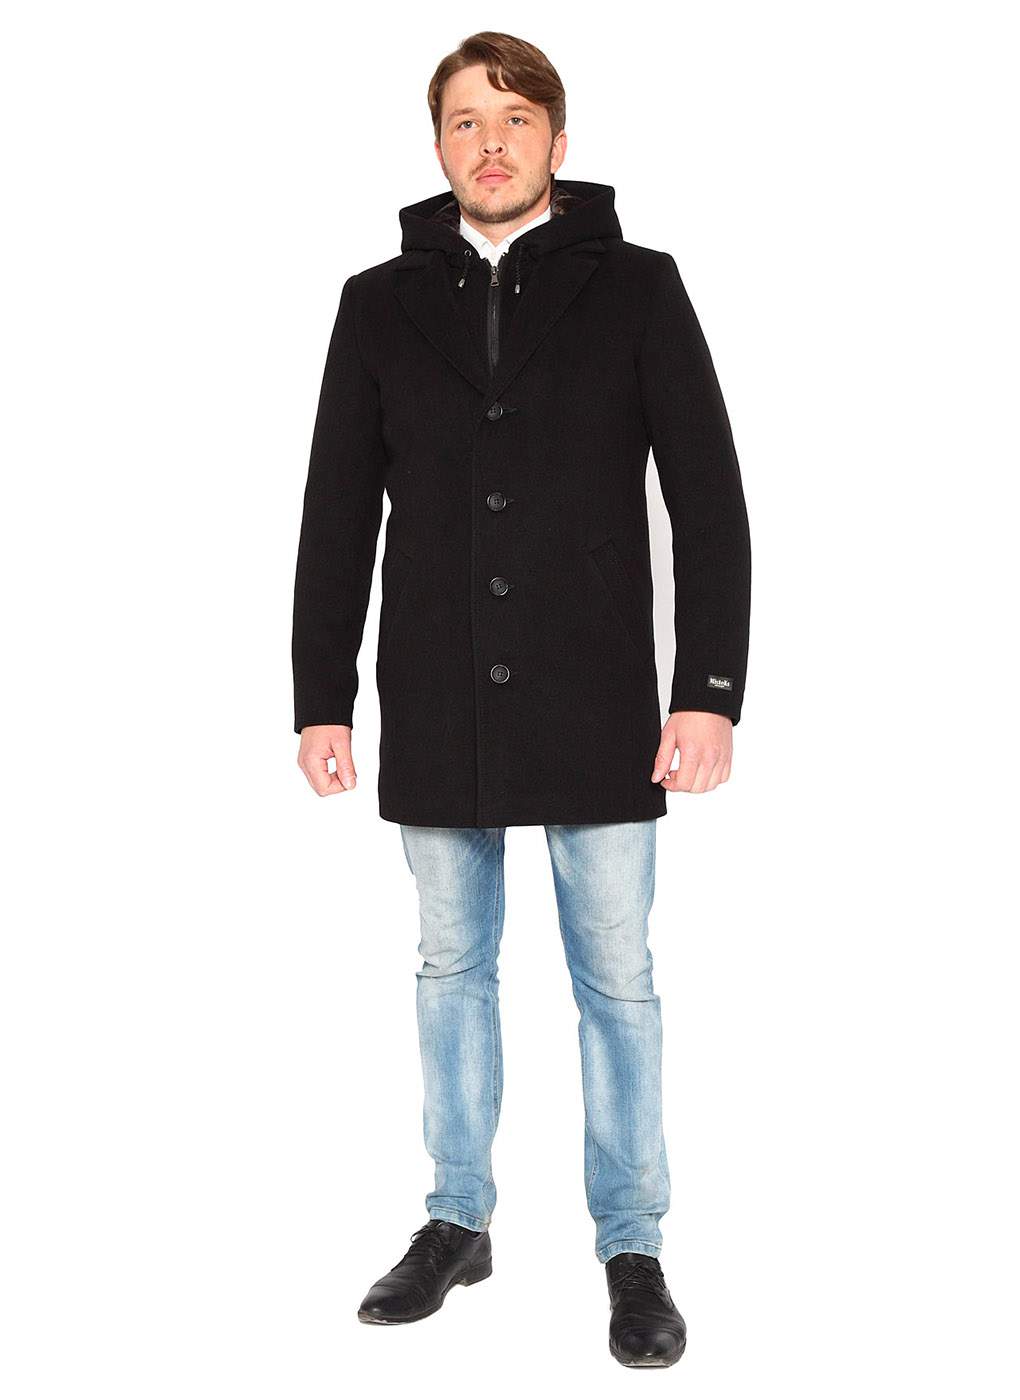 Пальто мужское MISTEKS DESIGN 59021 черное 48 RU